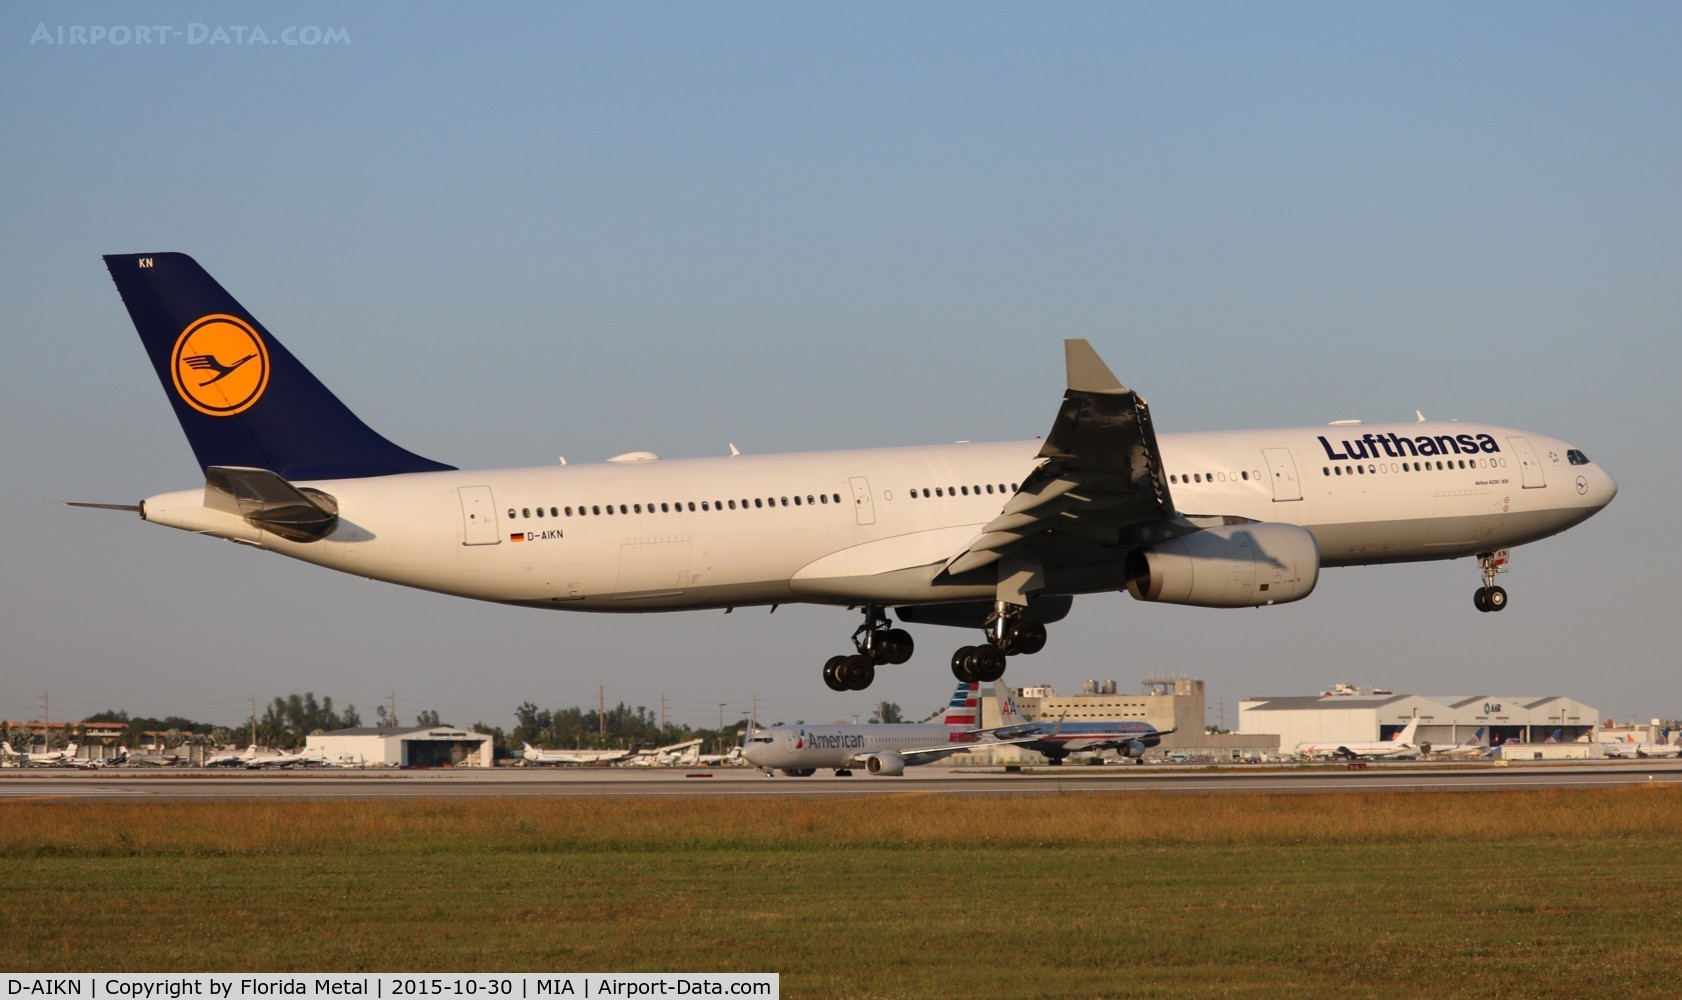 D-AIKN, 2008 Airbus A330-343X C/N 922, Lufthansa